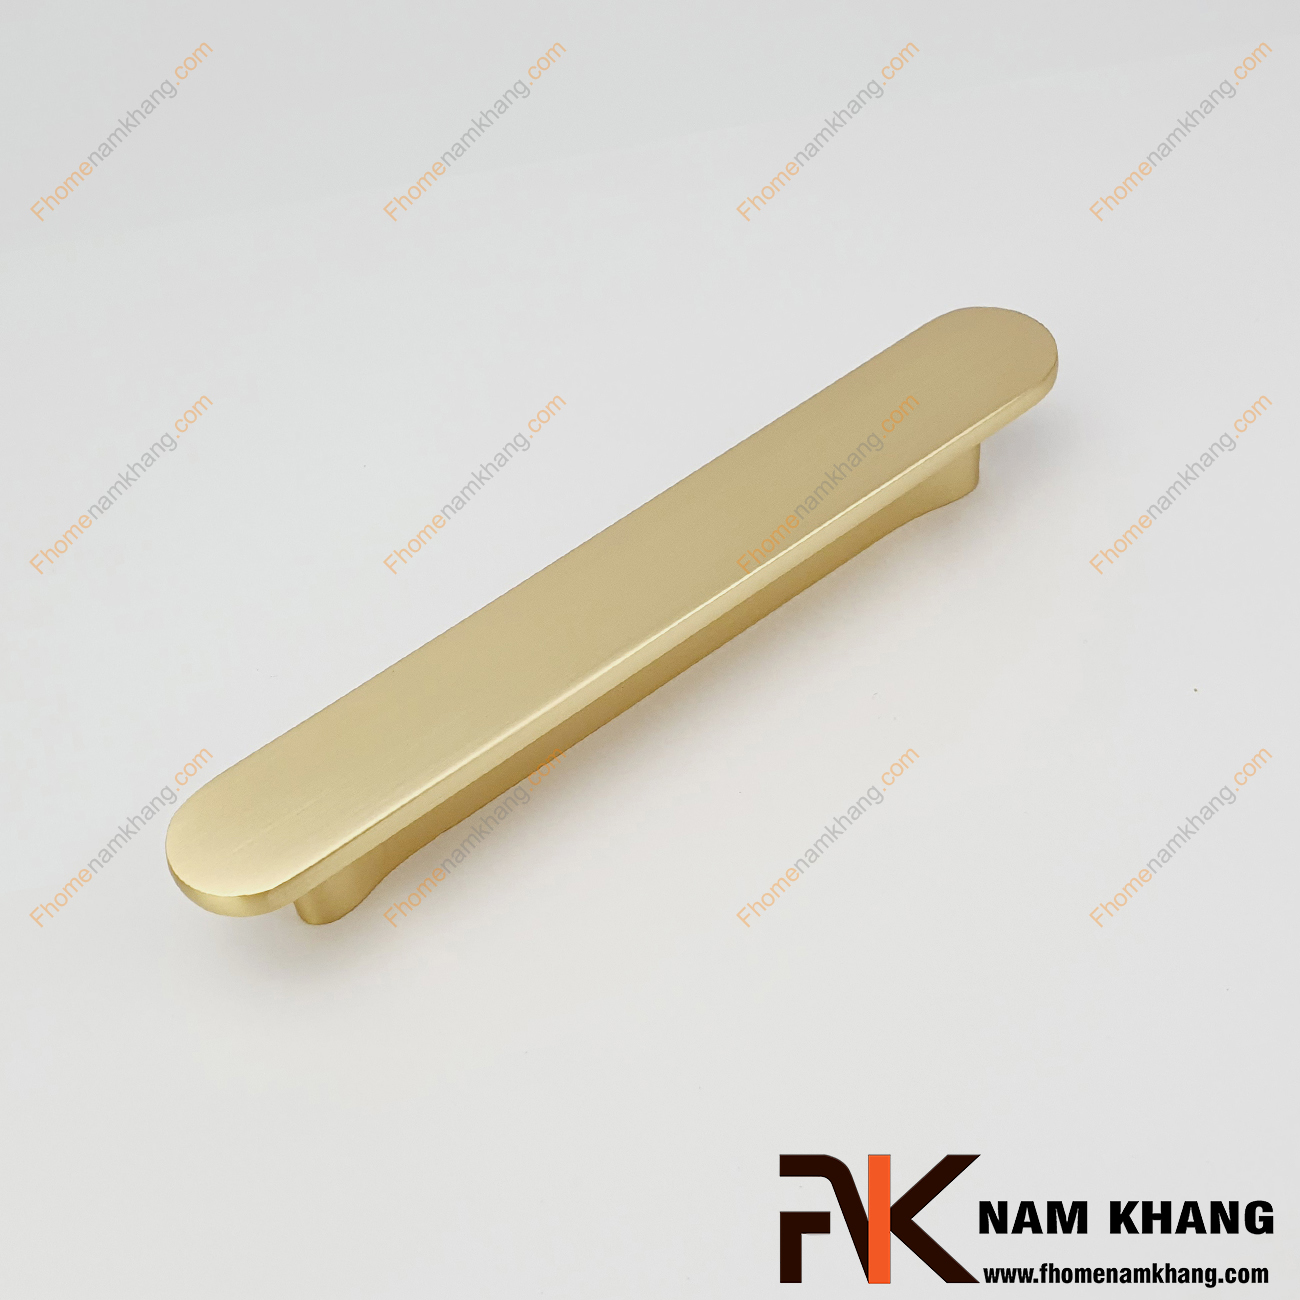 Tay nắm tủ dạng thanh NK455-VM, thiết kế dạng tay nắm được bo tròn màu vàng mờ.